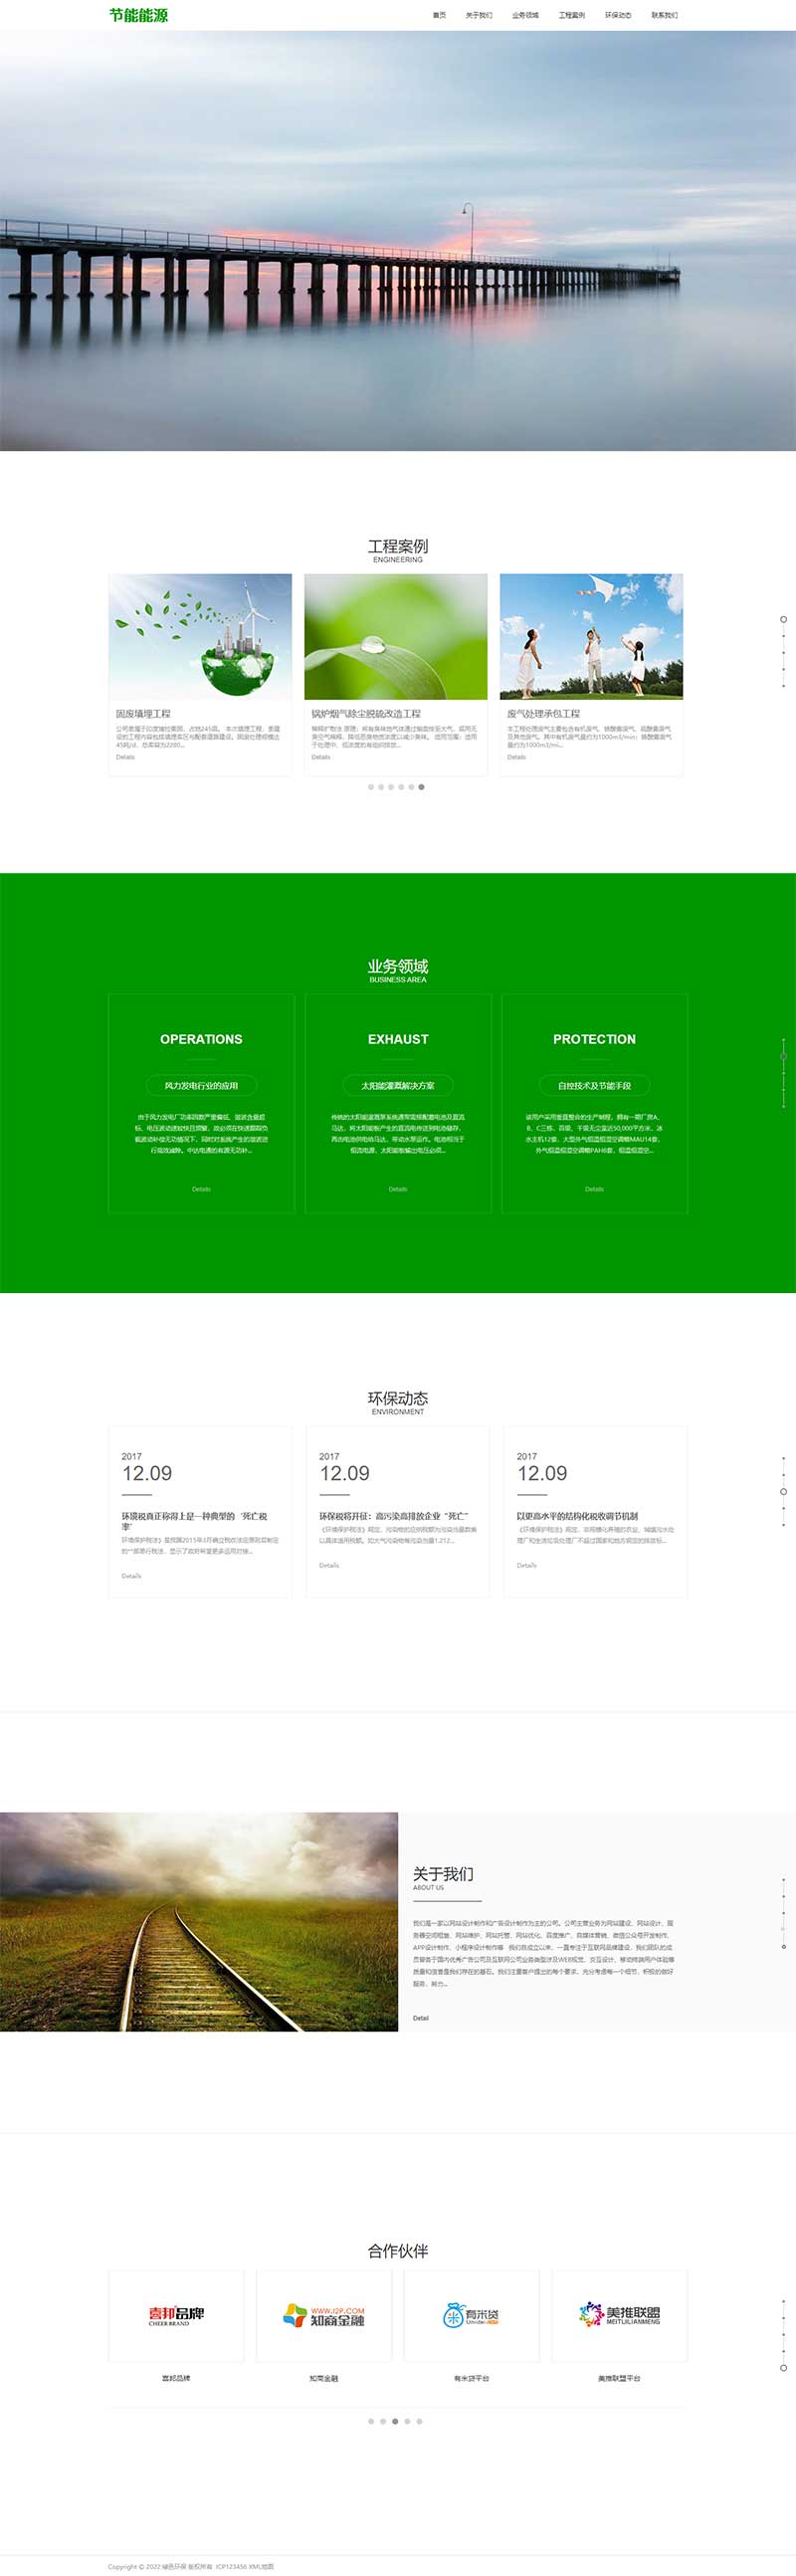 Wordpress绿色能源节能环保类宽屏滚屏企业网站模板效果图